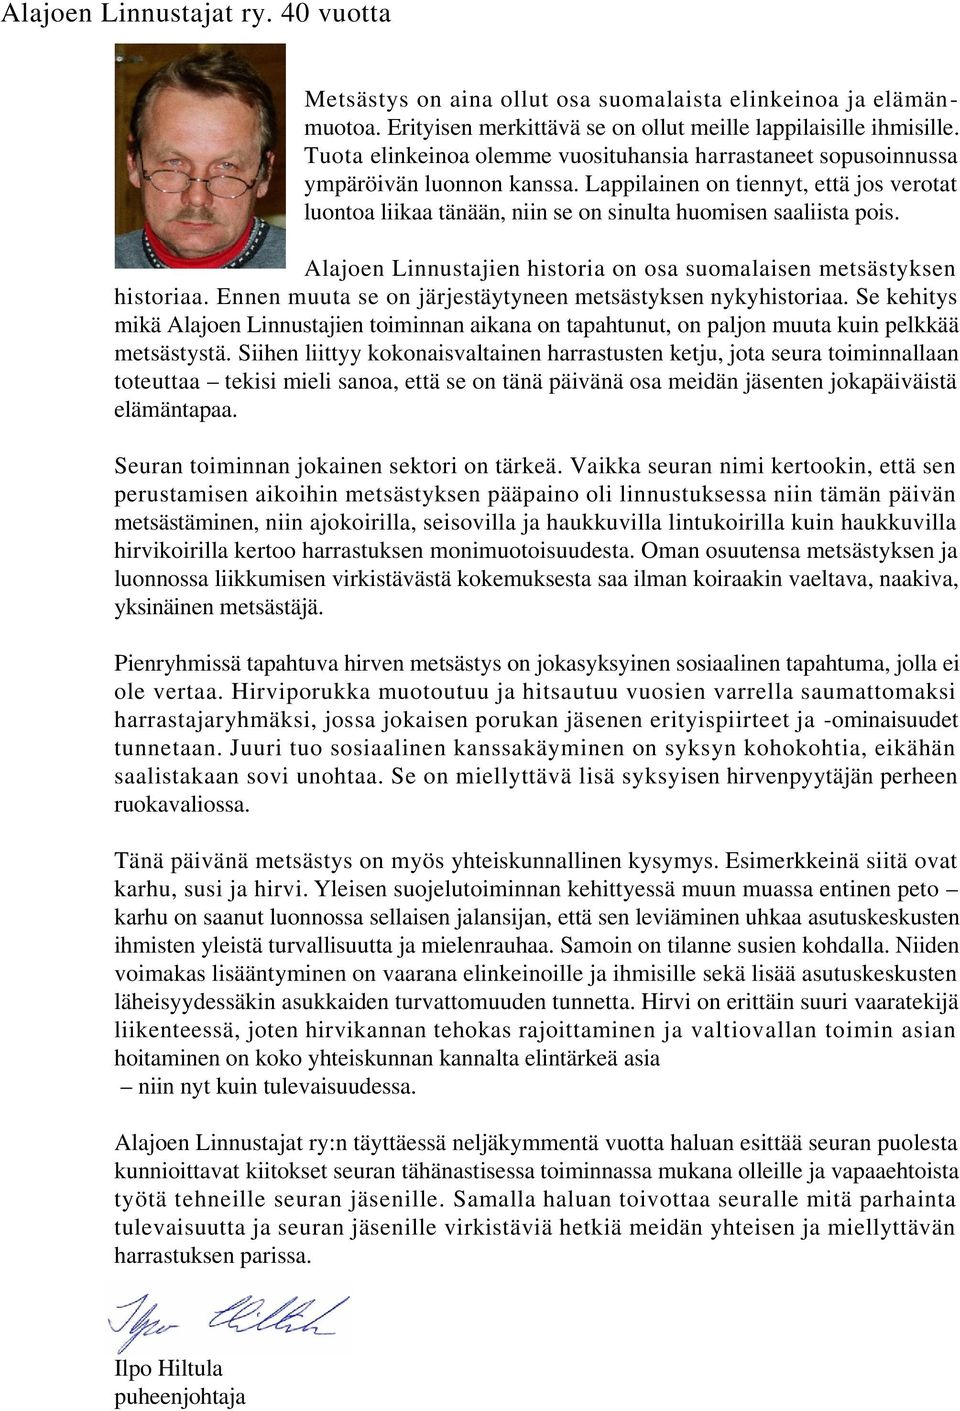 Alajoen Linnustajien historia on osa suomalaisen metsästyksen historiaa. Ennen muuta se on järjestäytyneen metsästyksen nykyhistoriaa.